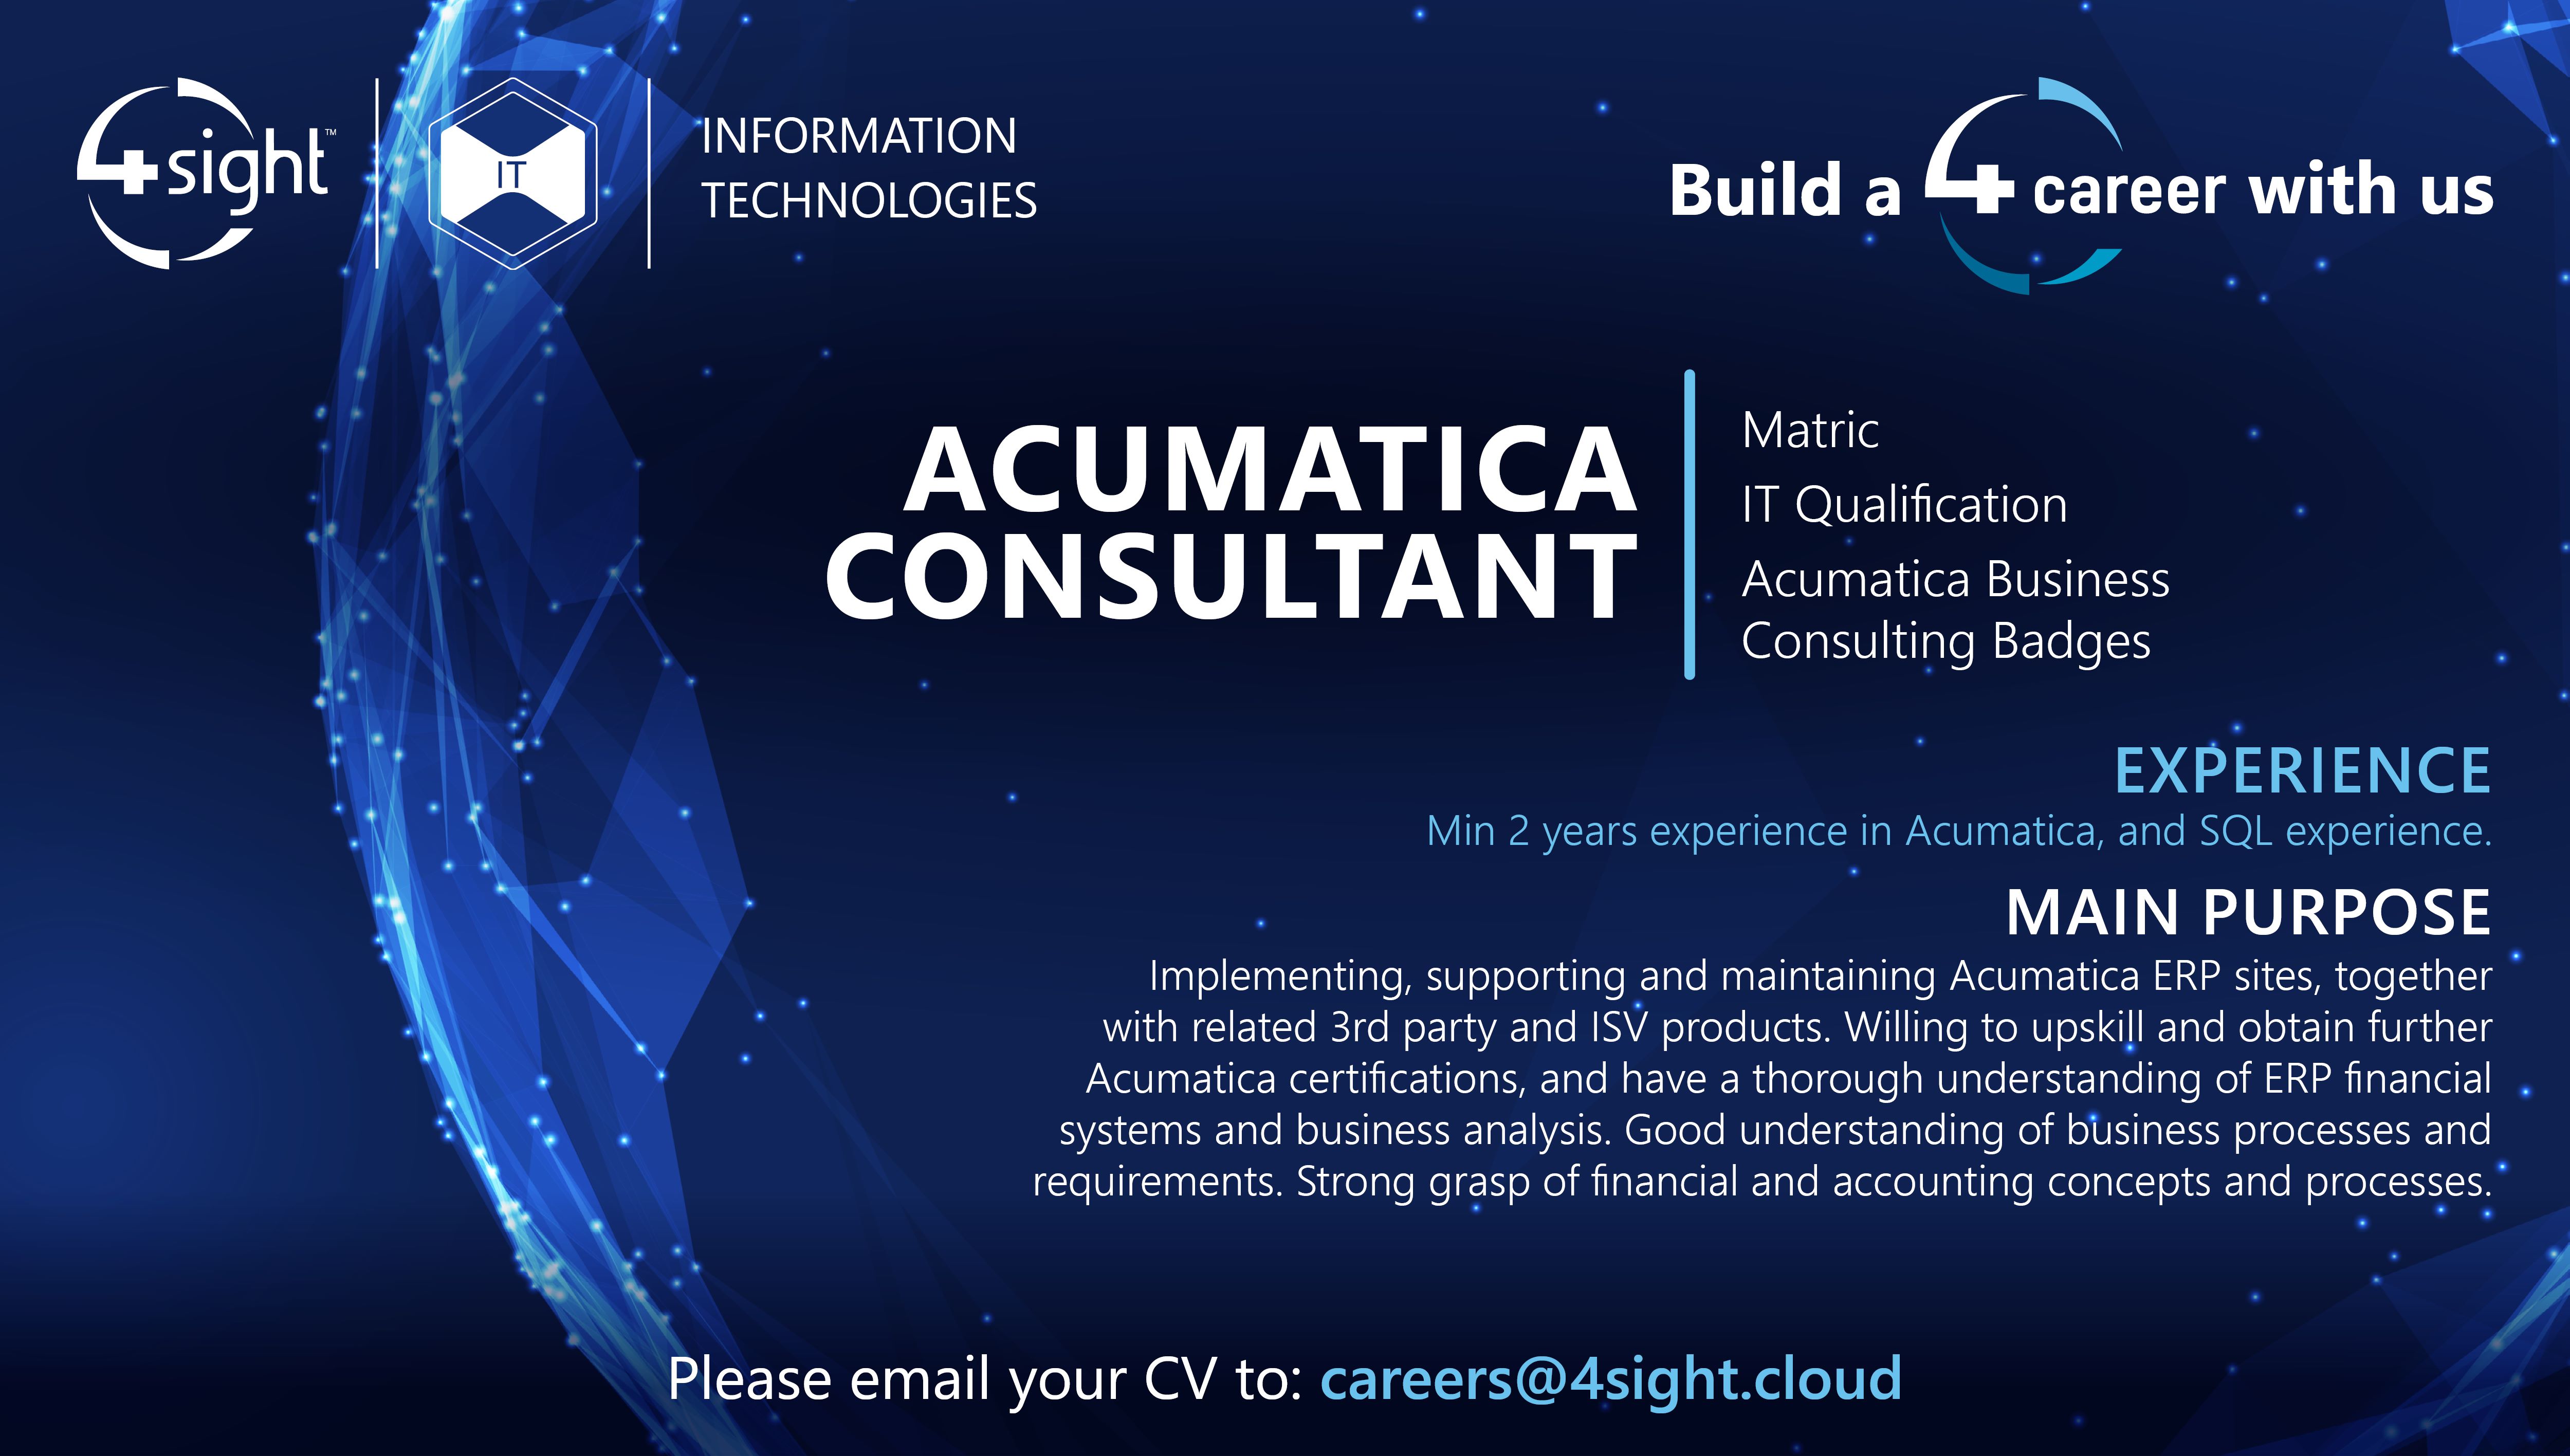 1.Acumatica Consultant IT Nov